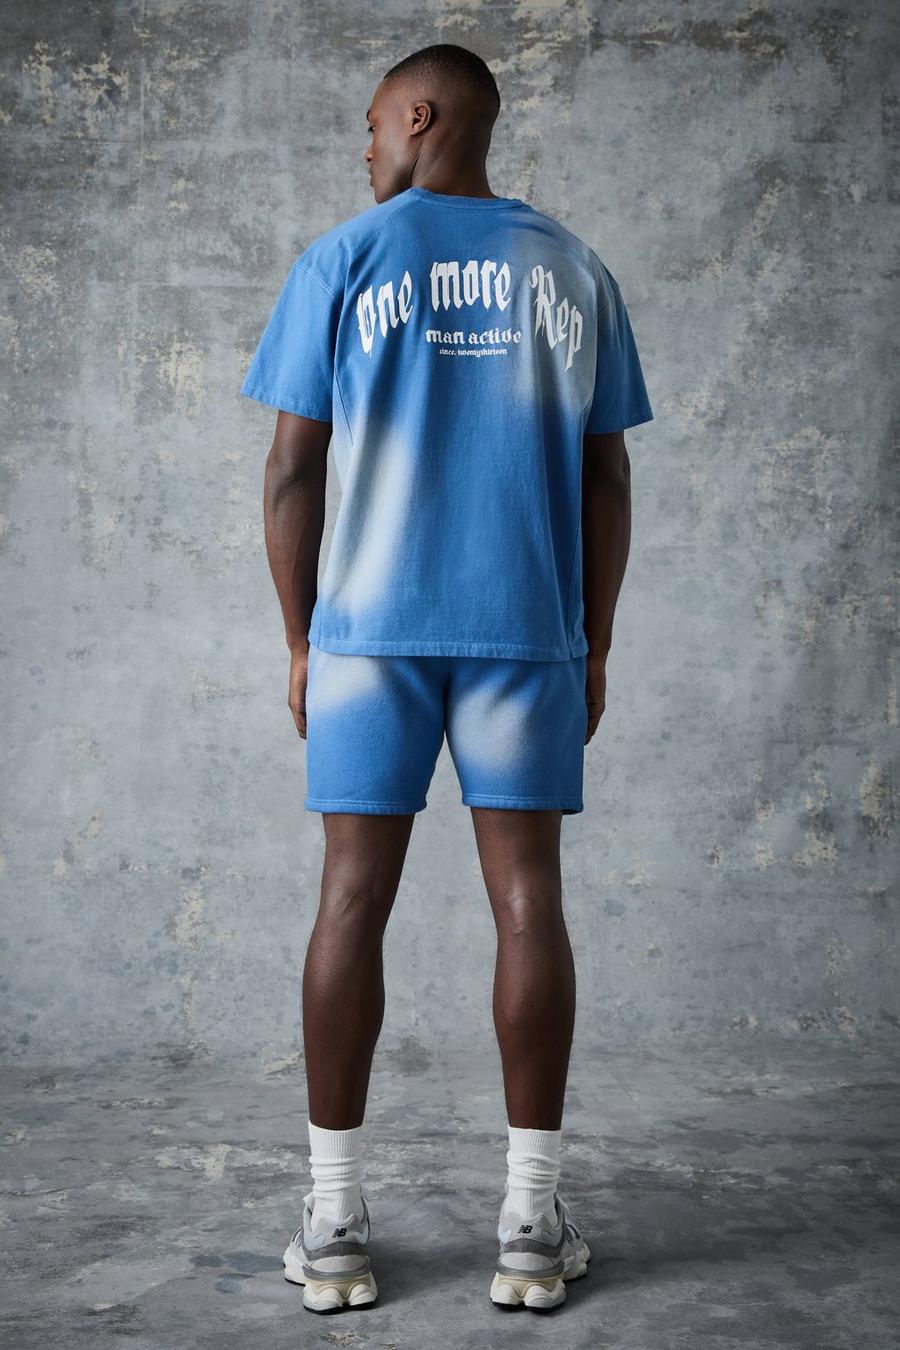 Blue Man Active Gebleekte Vintage One More Rep T-Shirt Set image number 1